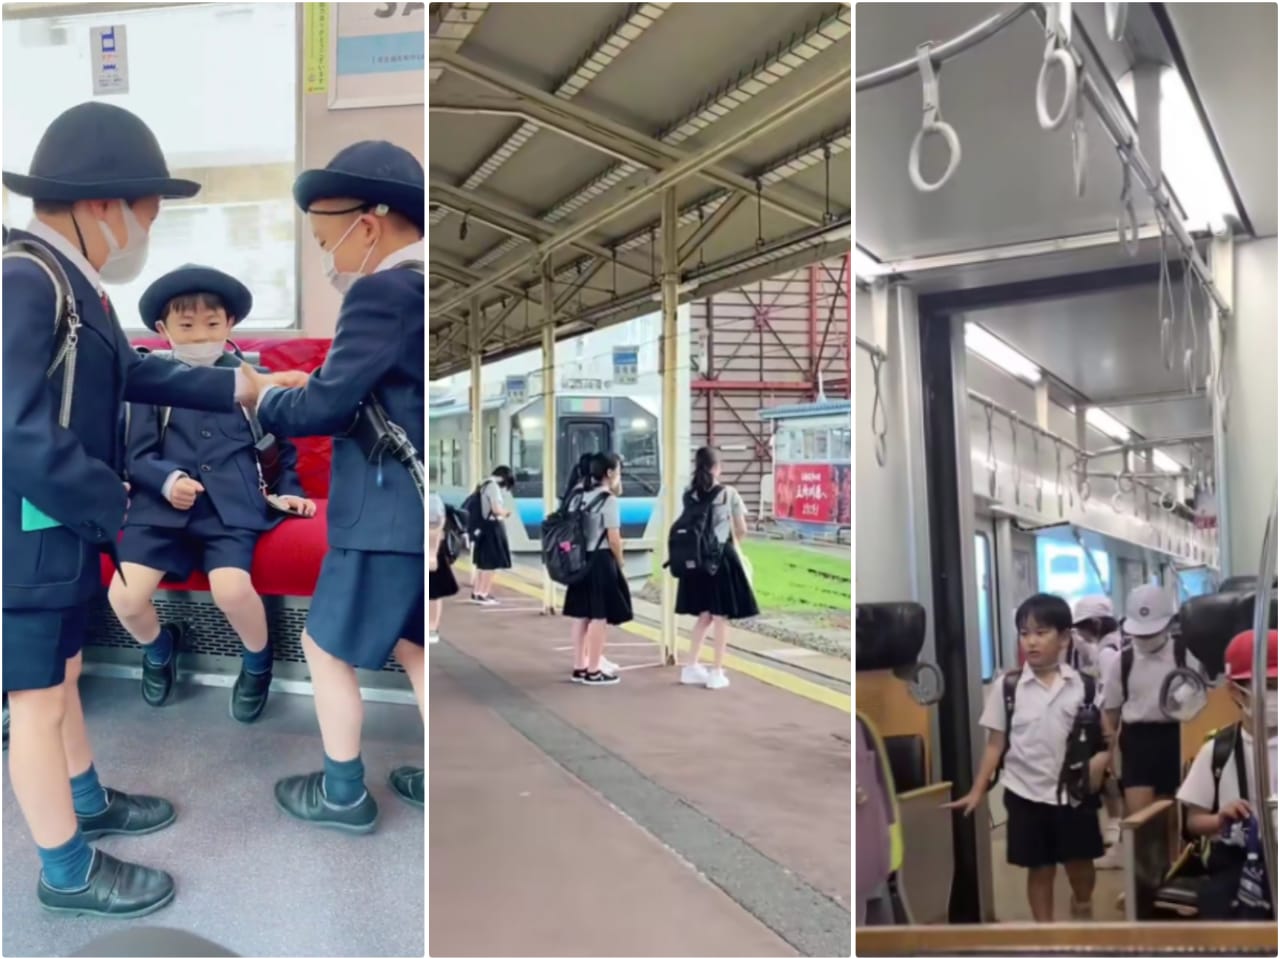 Anak SD Jepang ke Sekolah Naik Kereta Sendiri. Netizen: Di RI Emak Ngantar Lanjut Gibah Sampe Siang